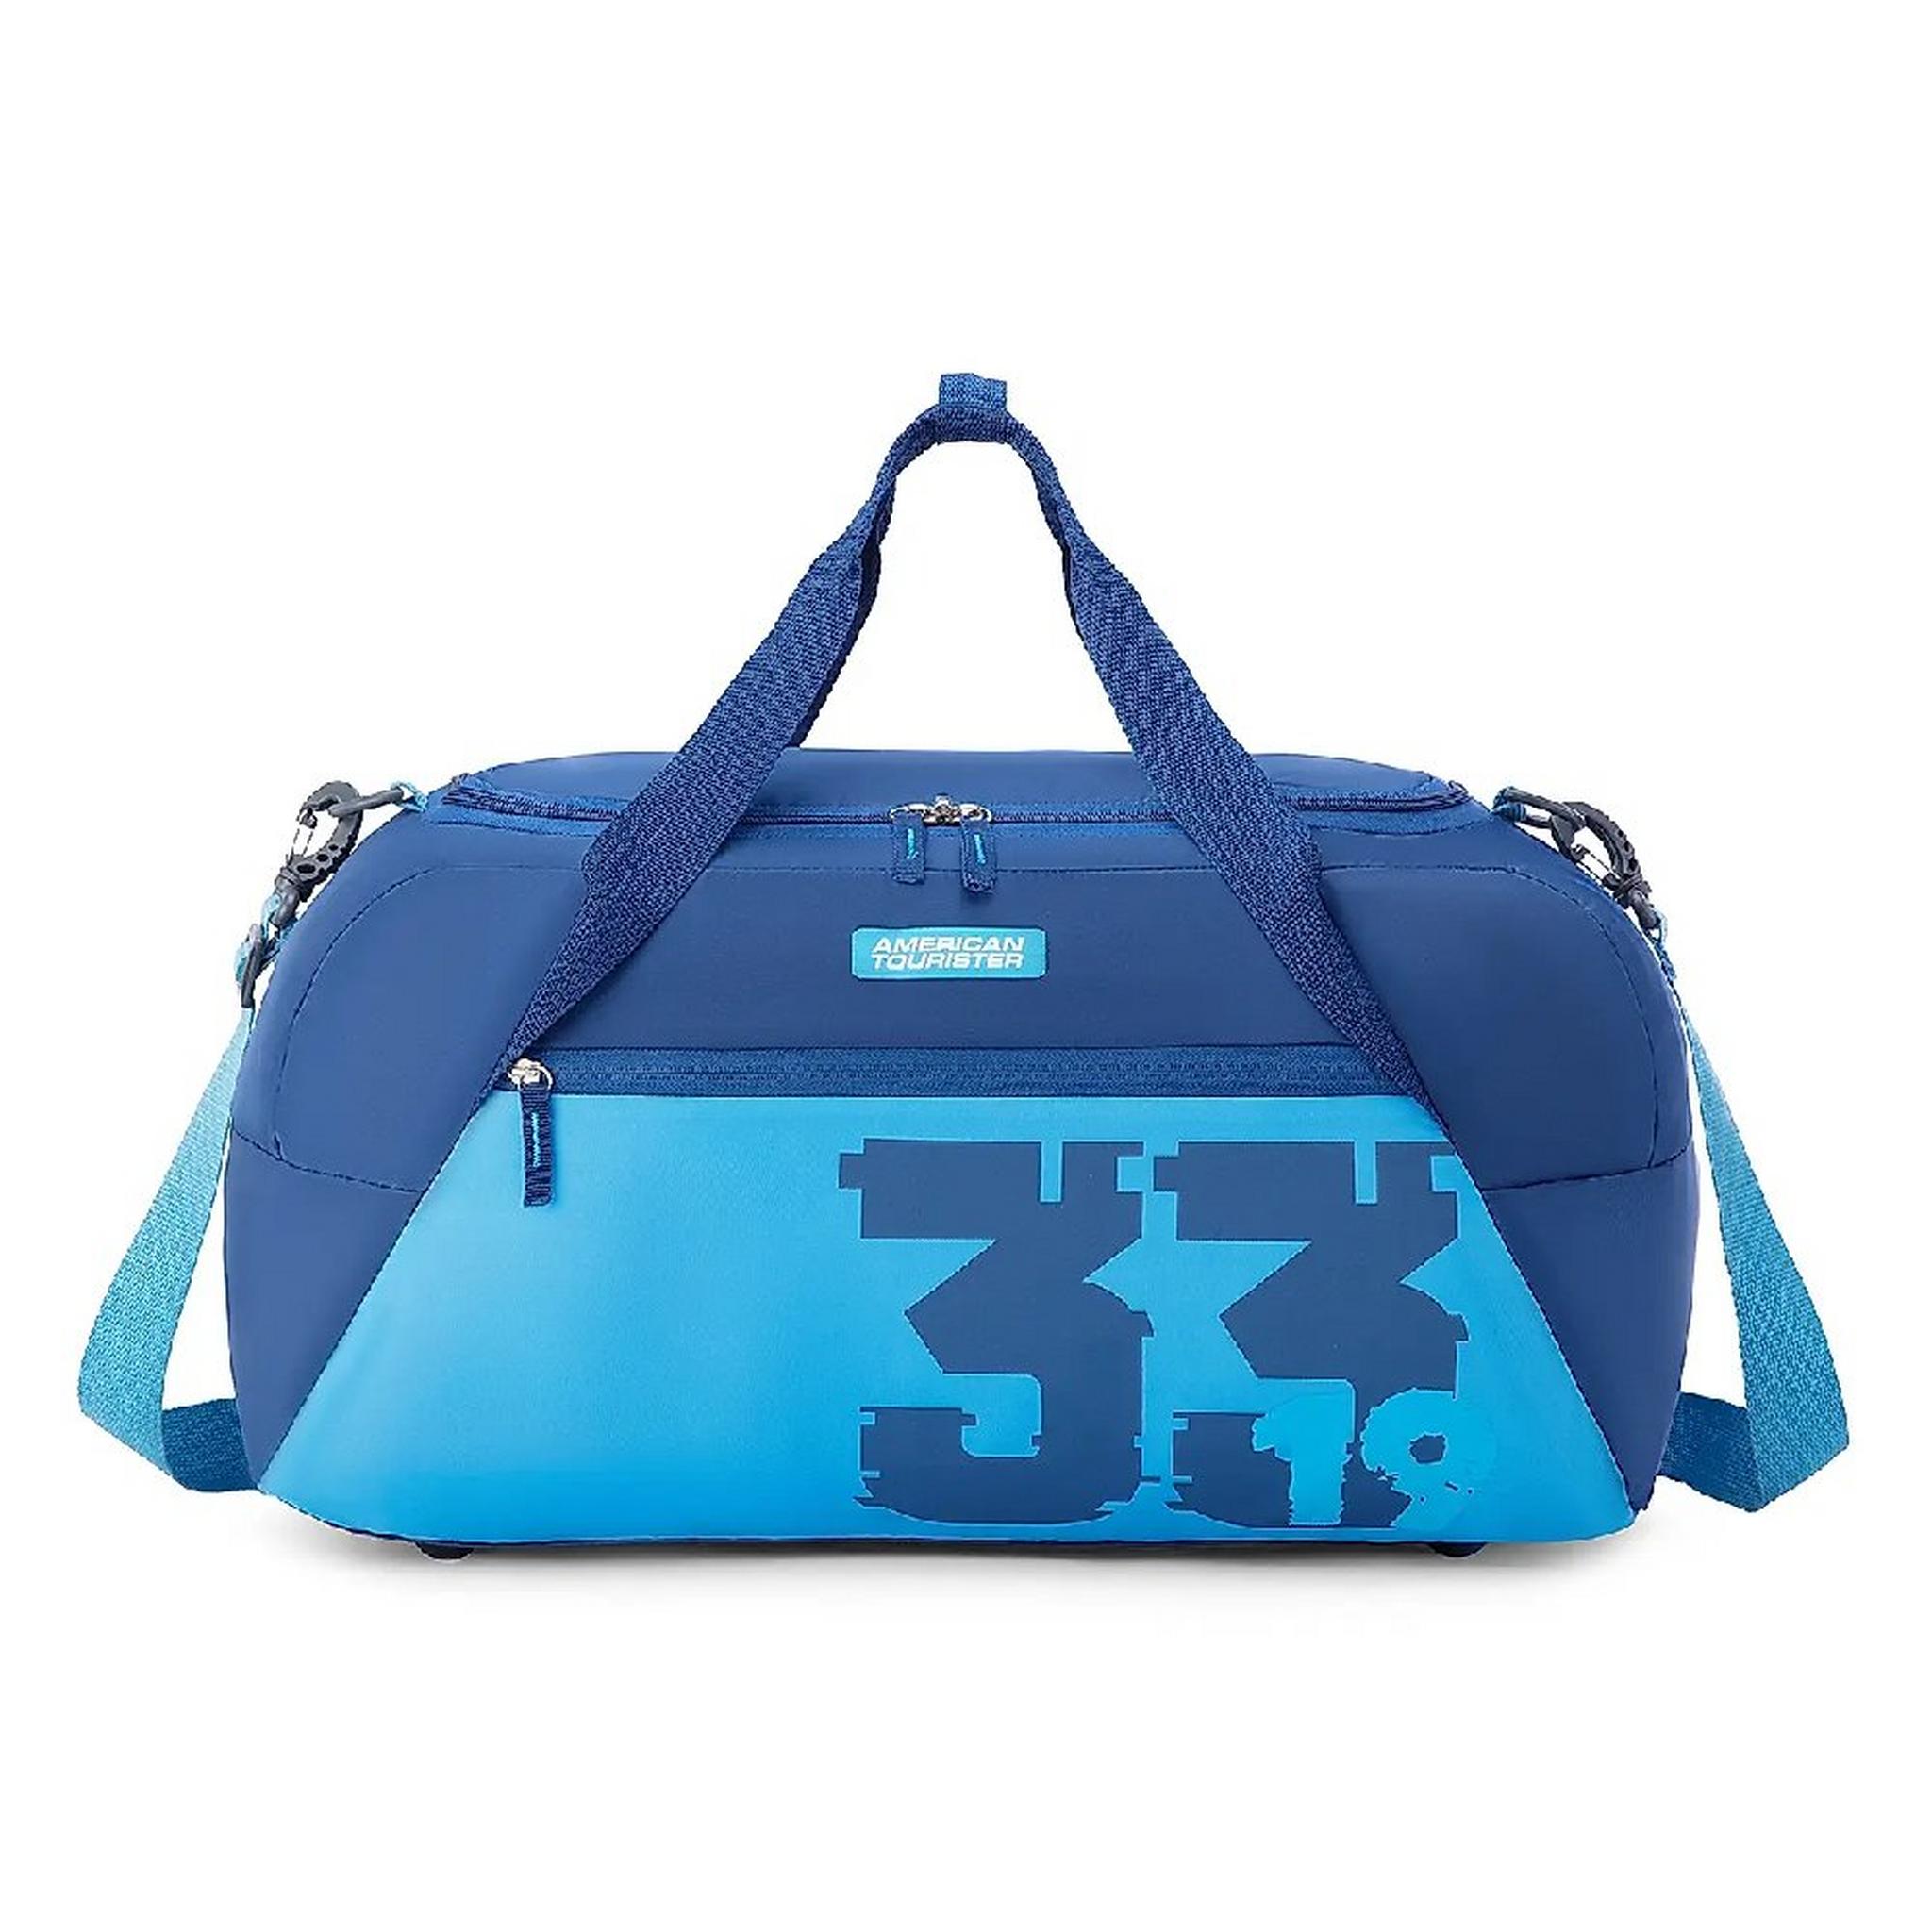 حقيبة كوفو دفل من أمريكان توريستر،  52 سم، LL6X01101 - أزرق